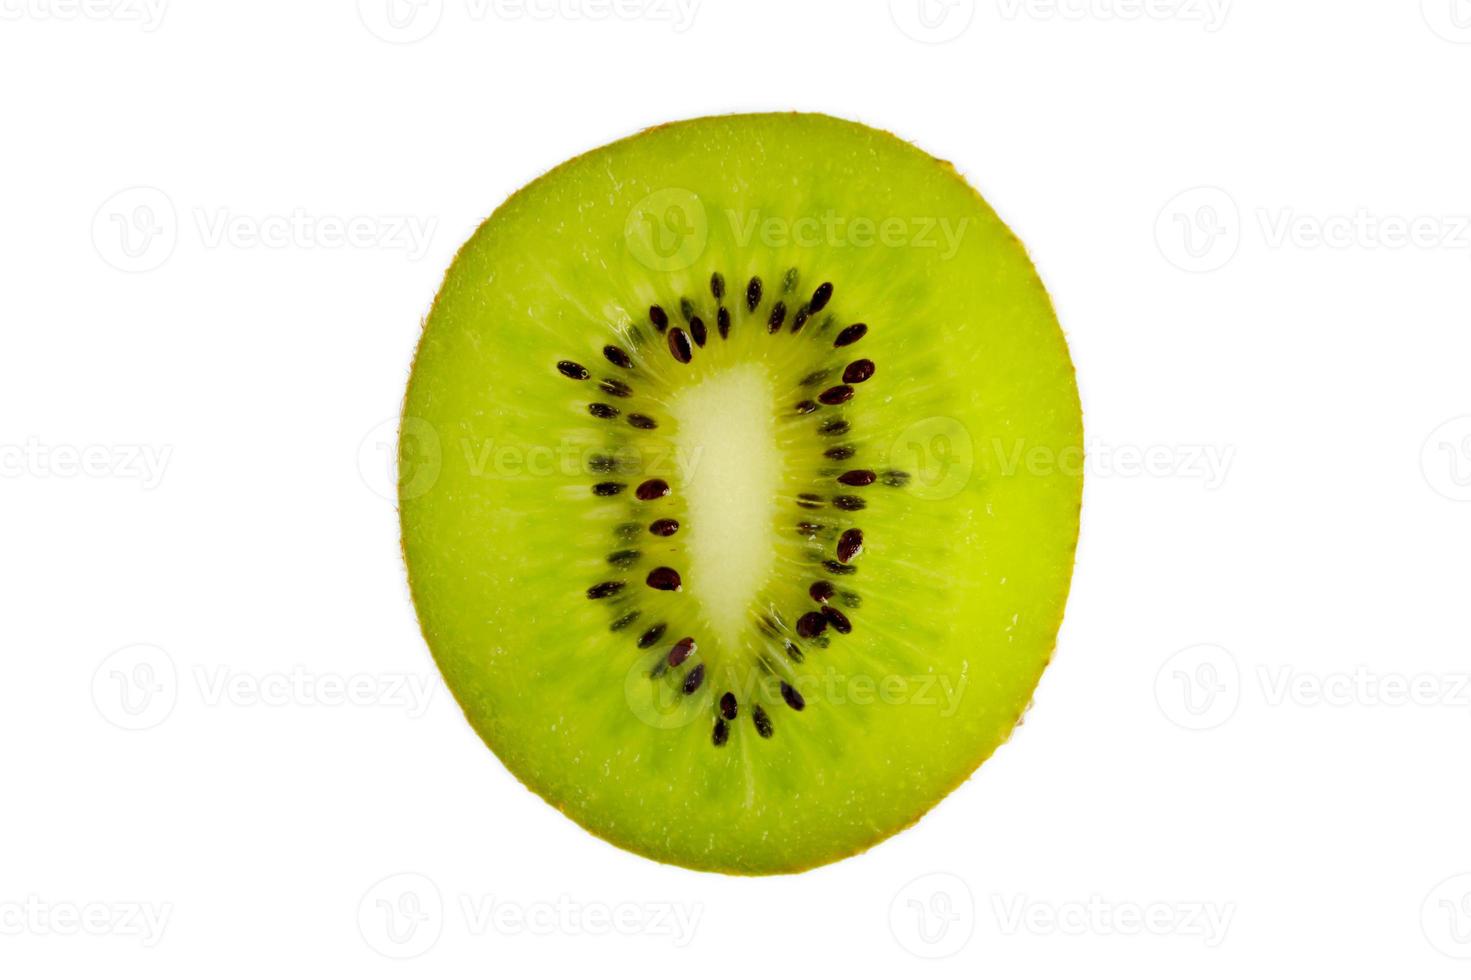 coupe transversale de kiwi frais isolé sur fond blanc photo